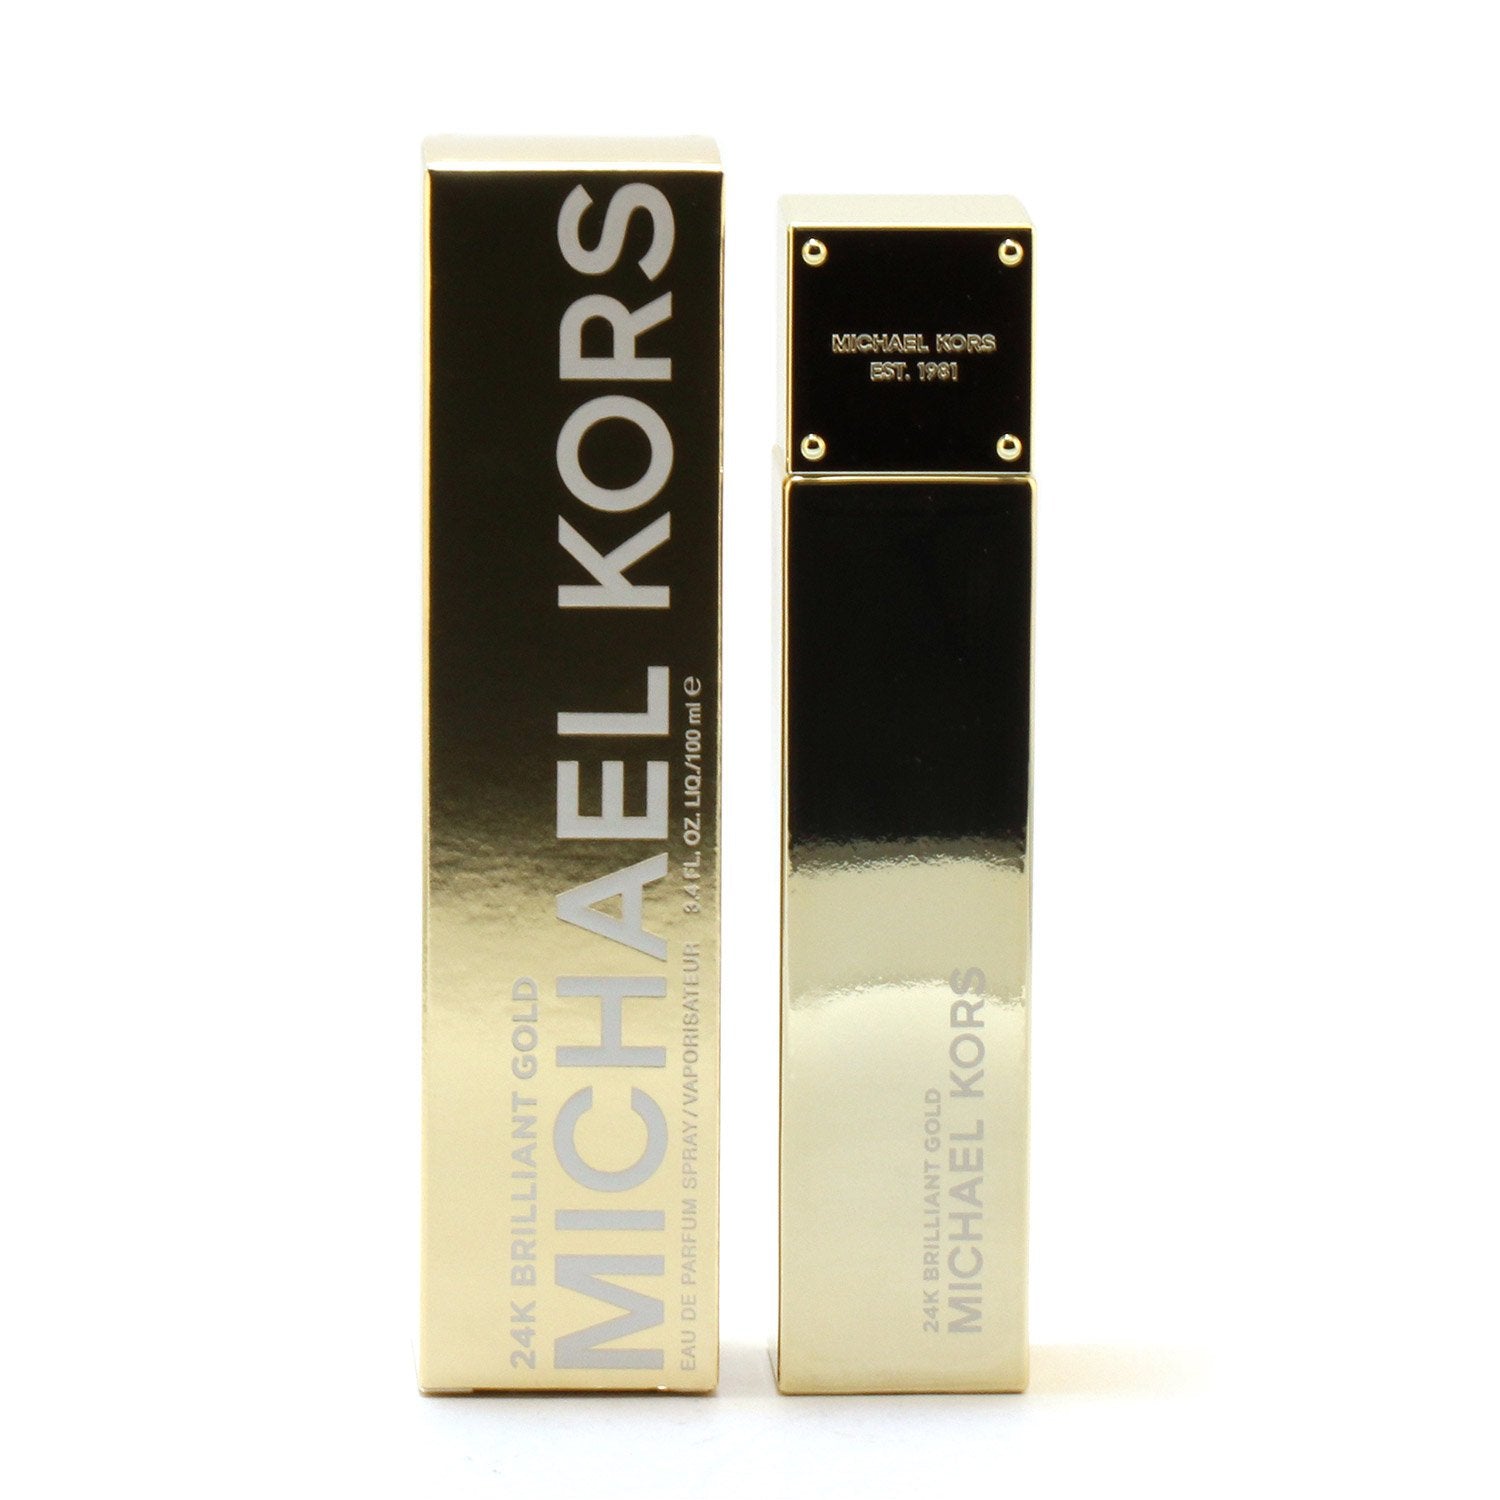 Perfume - MICHAEL KORS 24K BRILLIANT GOLD FOR WOMEN - EAU DE PARFUM SPRAY